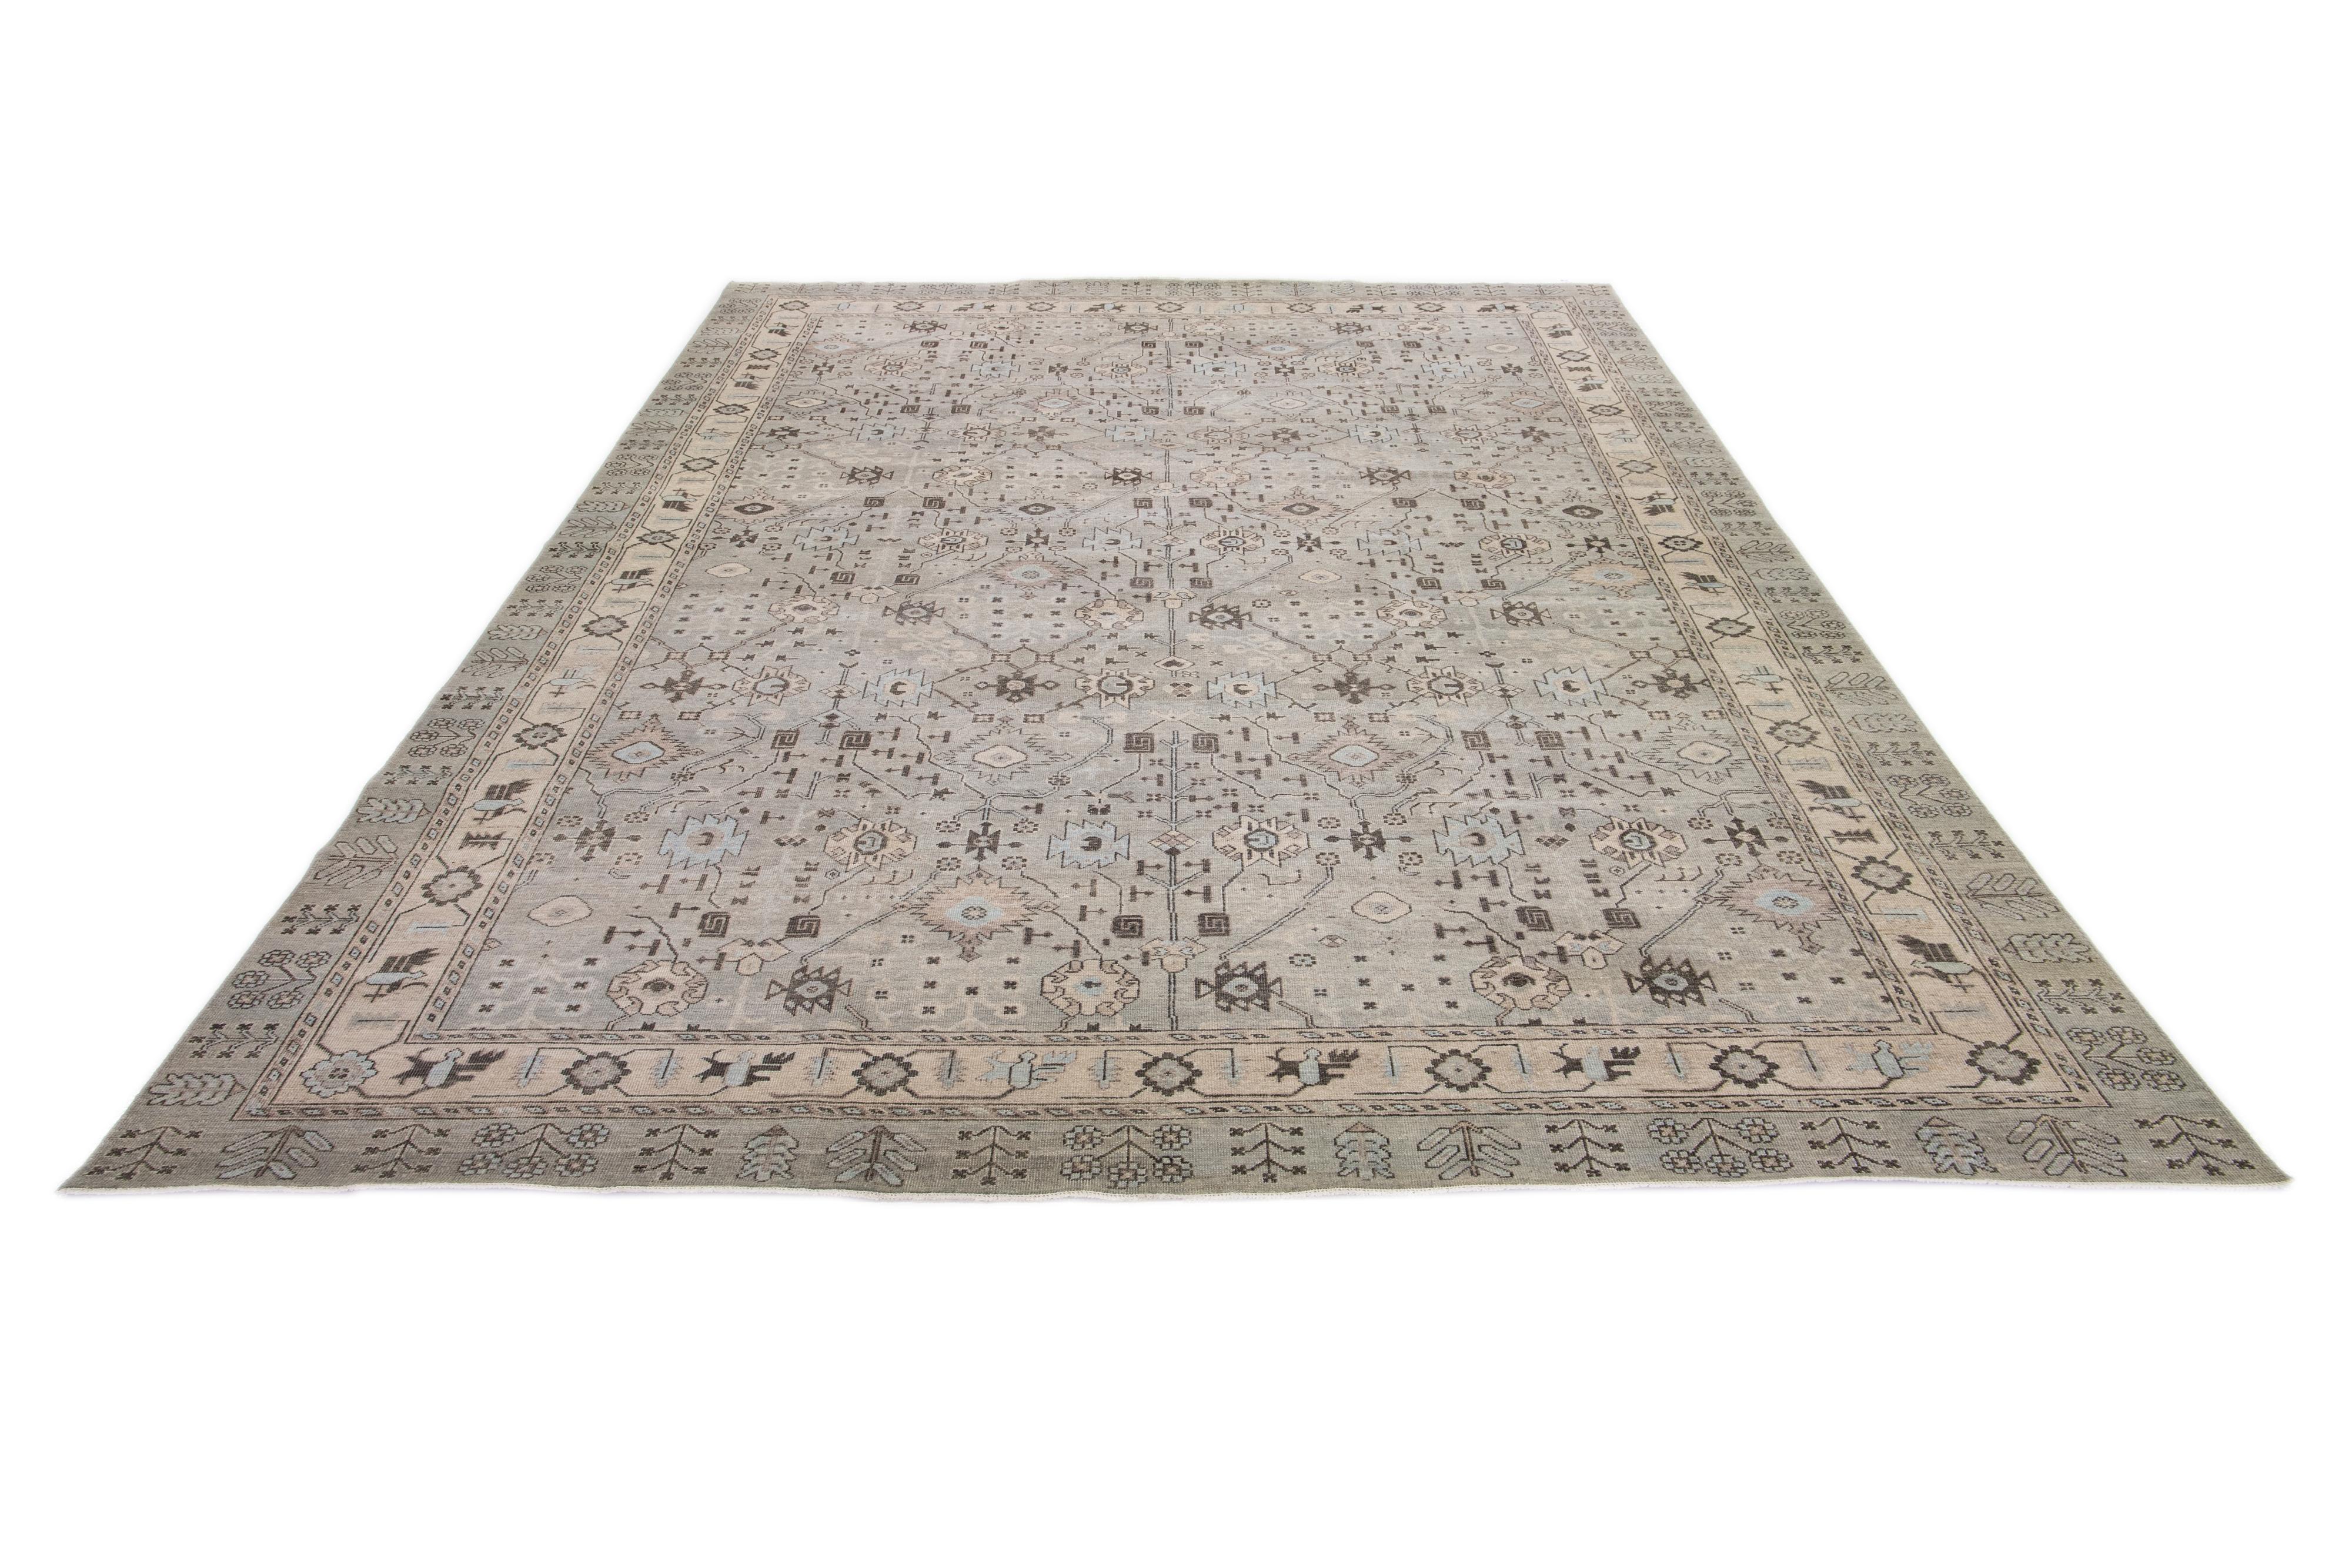 Ein Teppich aus Khotan-Wolle in einem grauen Farbfeld mit geometrischen Mustern allover. Dieses handgeknüpfte moderne Stück hat blaue und graue Akzente, die das Design ergänzen.

Dieser Teppich misst 11'9